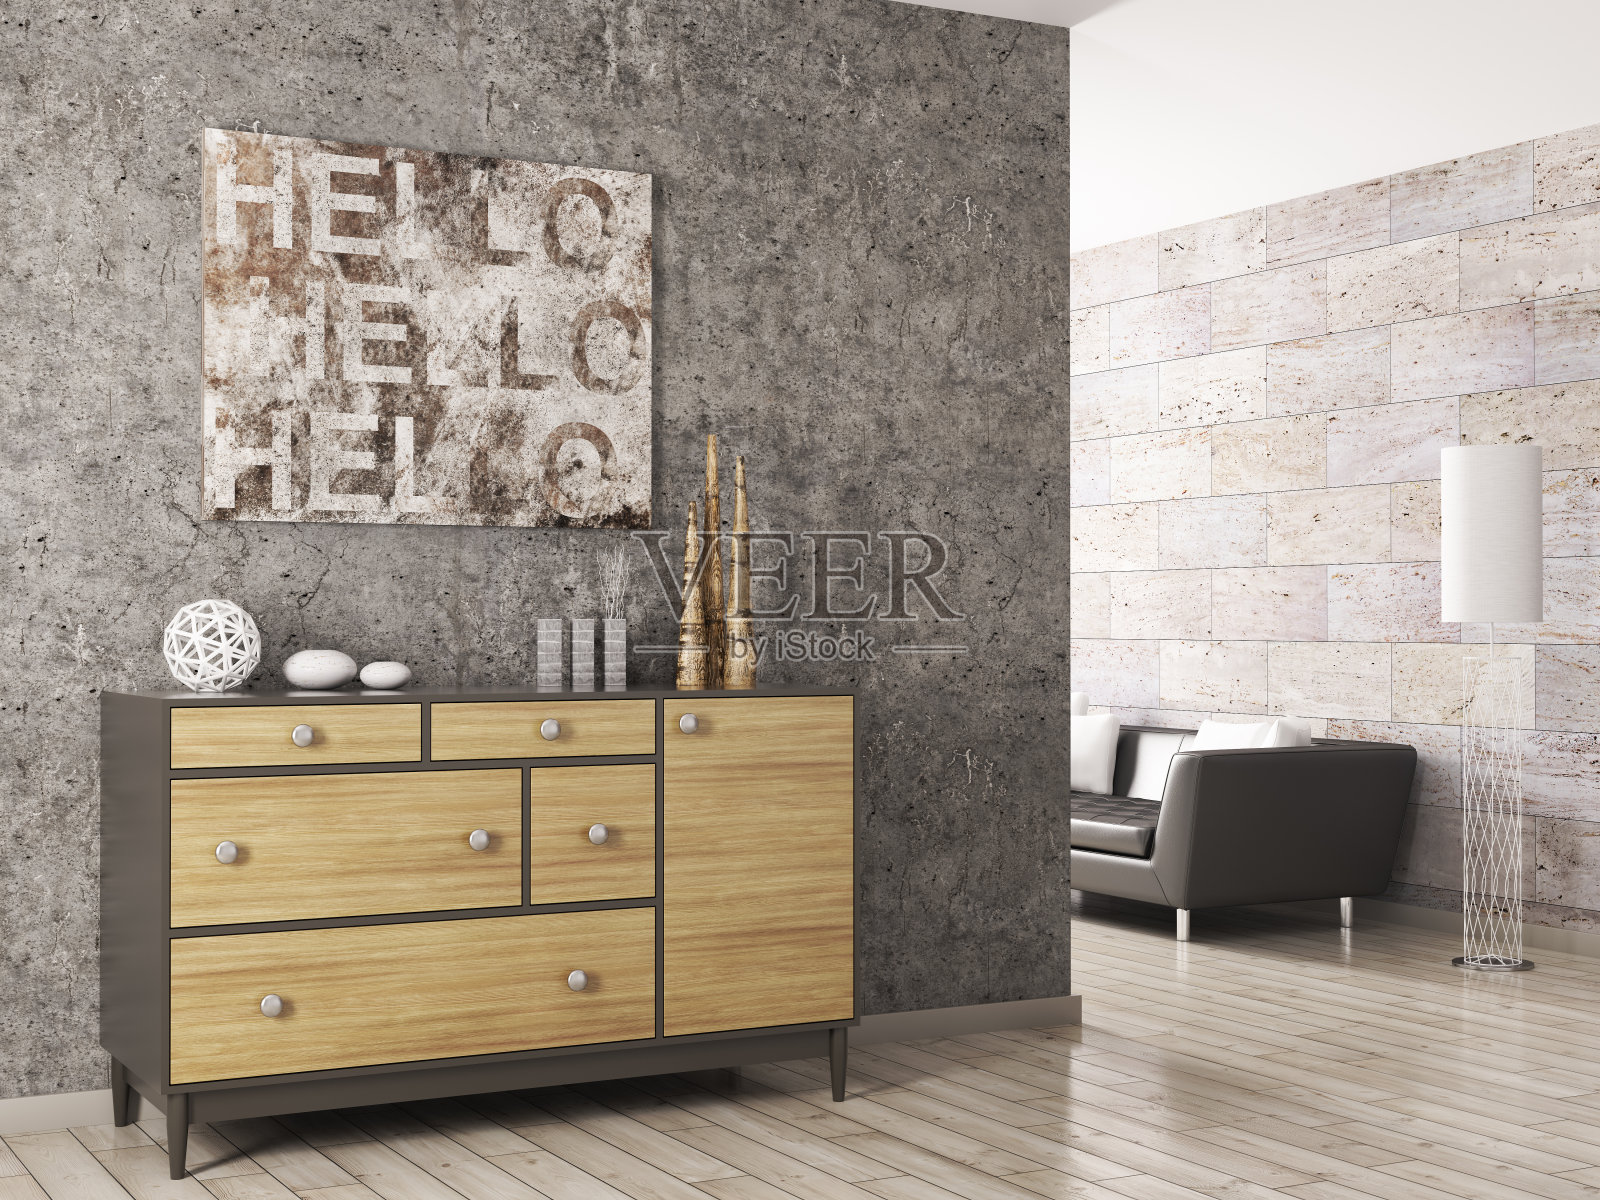 木质橱柜靠混凝土墙3d渲染照片摄影图片